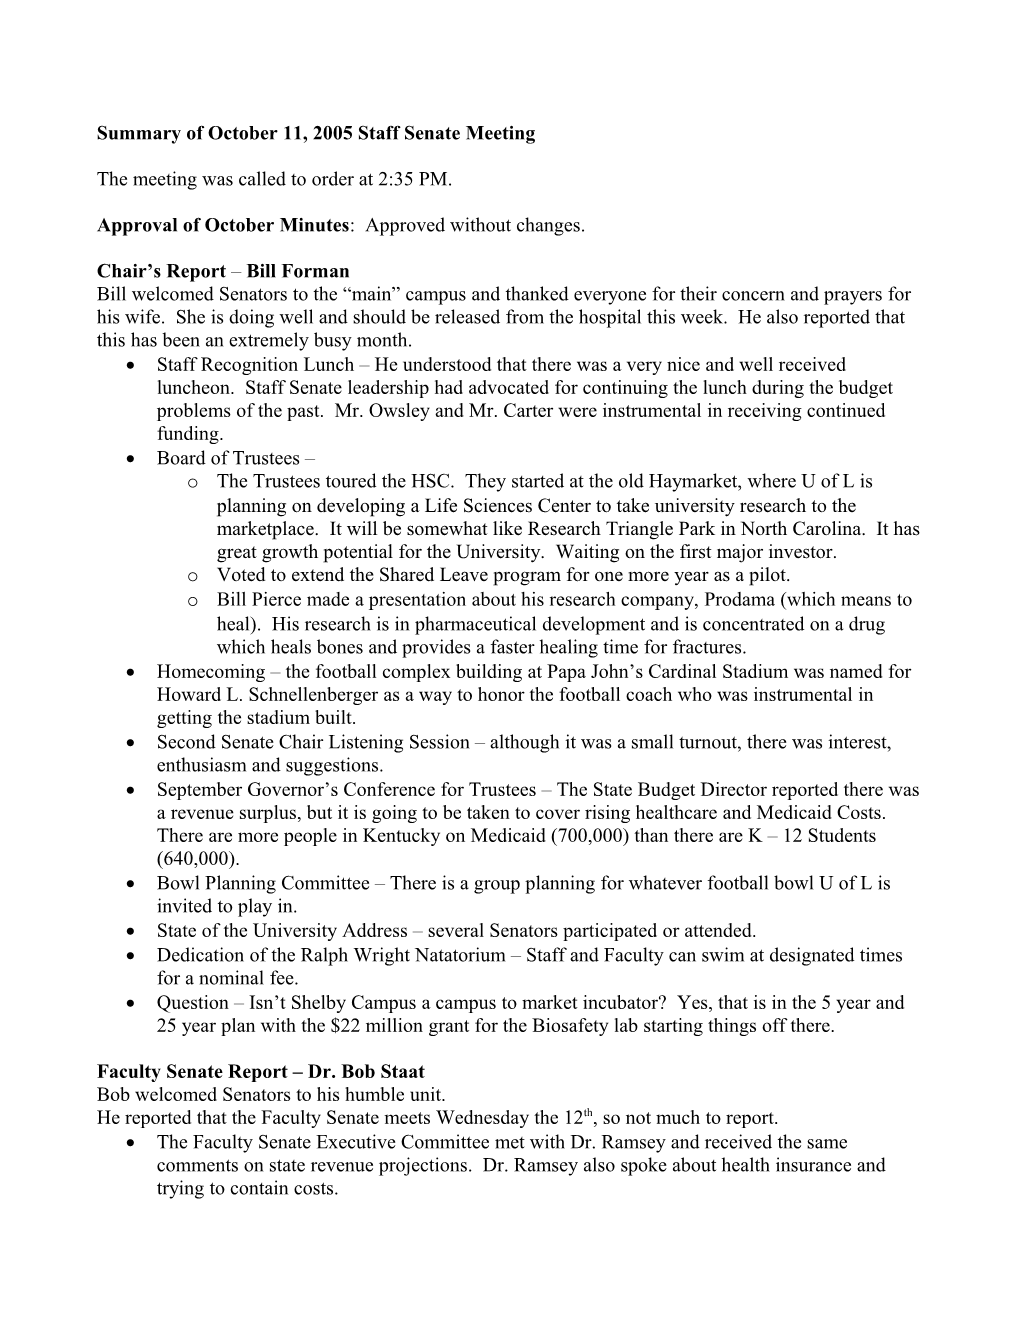 Summary of June 13, 2005 Staff Senate Meeting